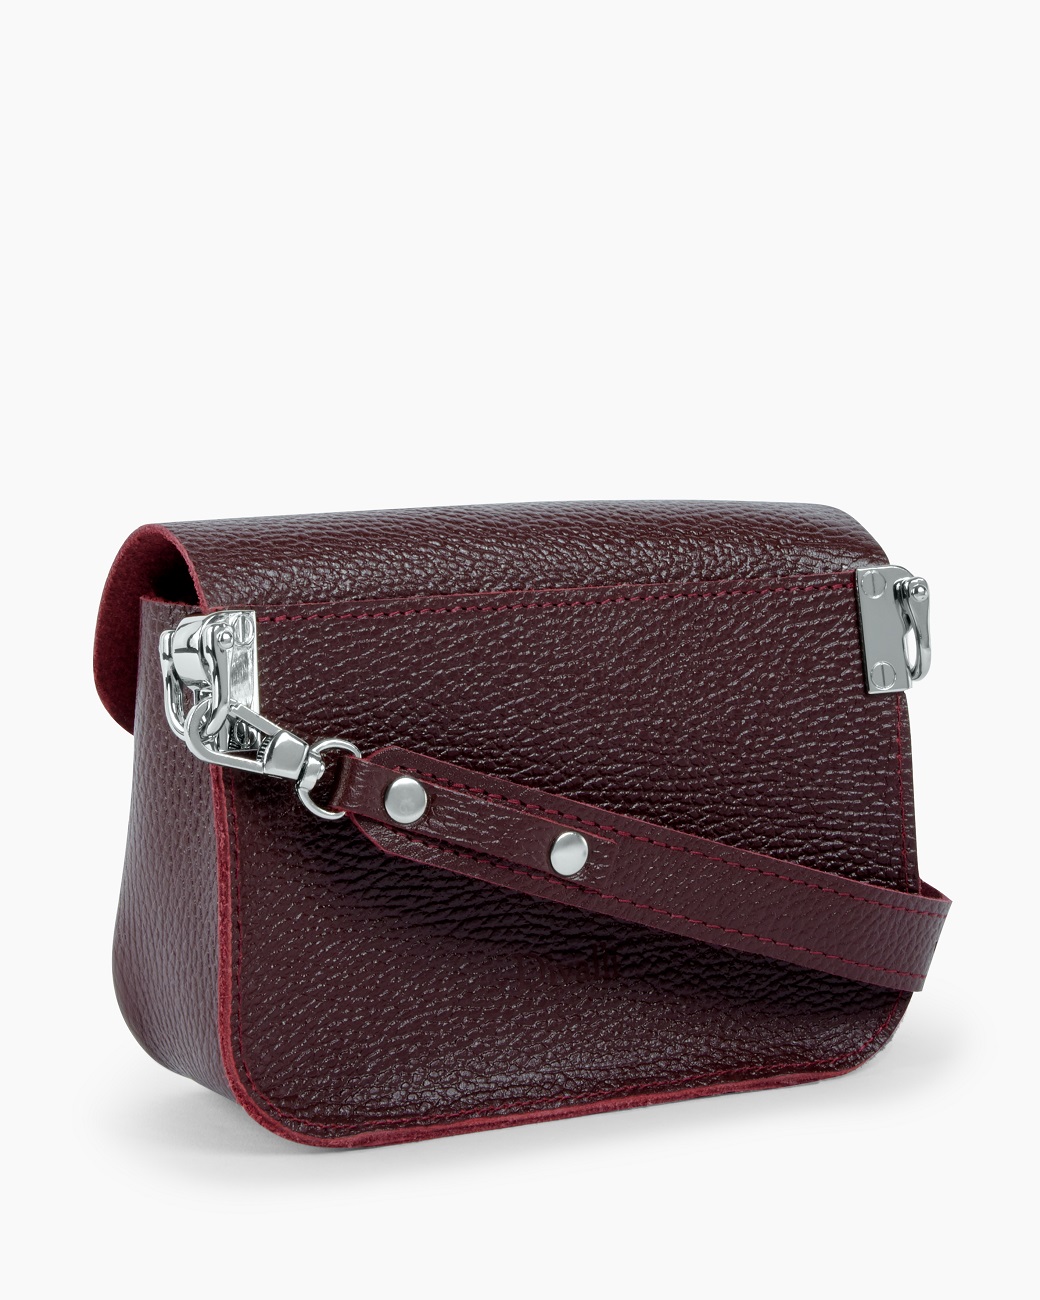 Женская поясная сумка из натуральной кожи бордовая A001 burgundy mini grain